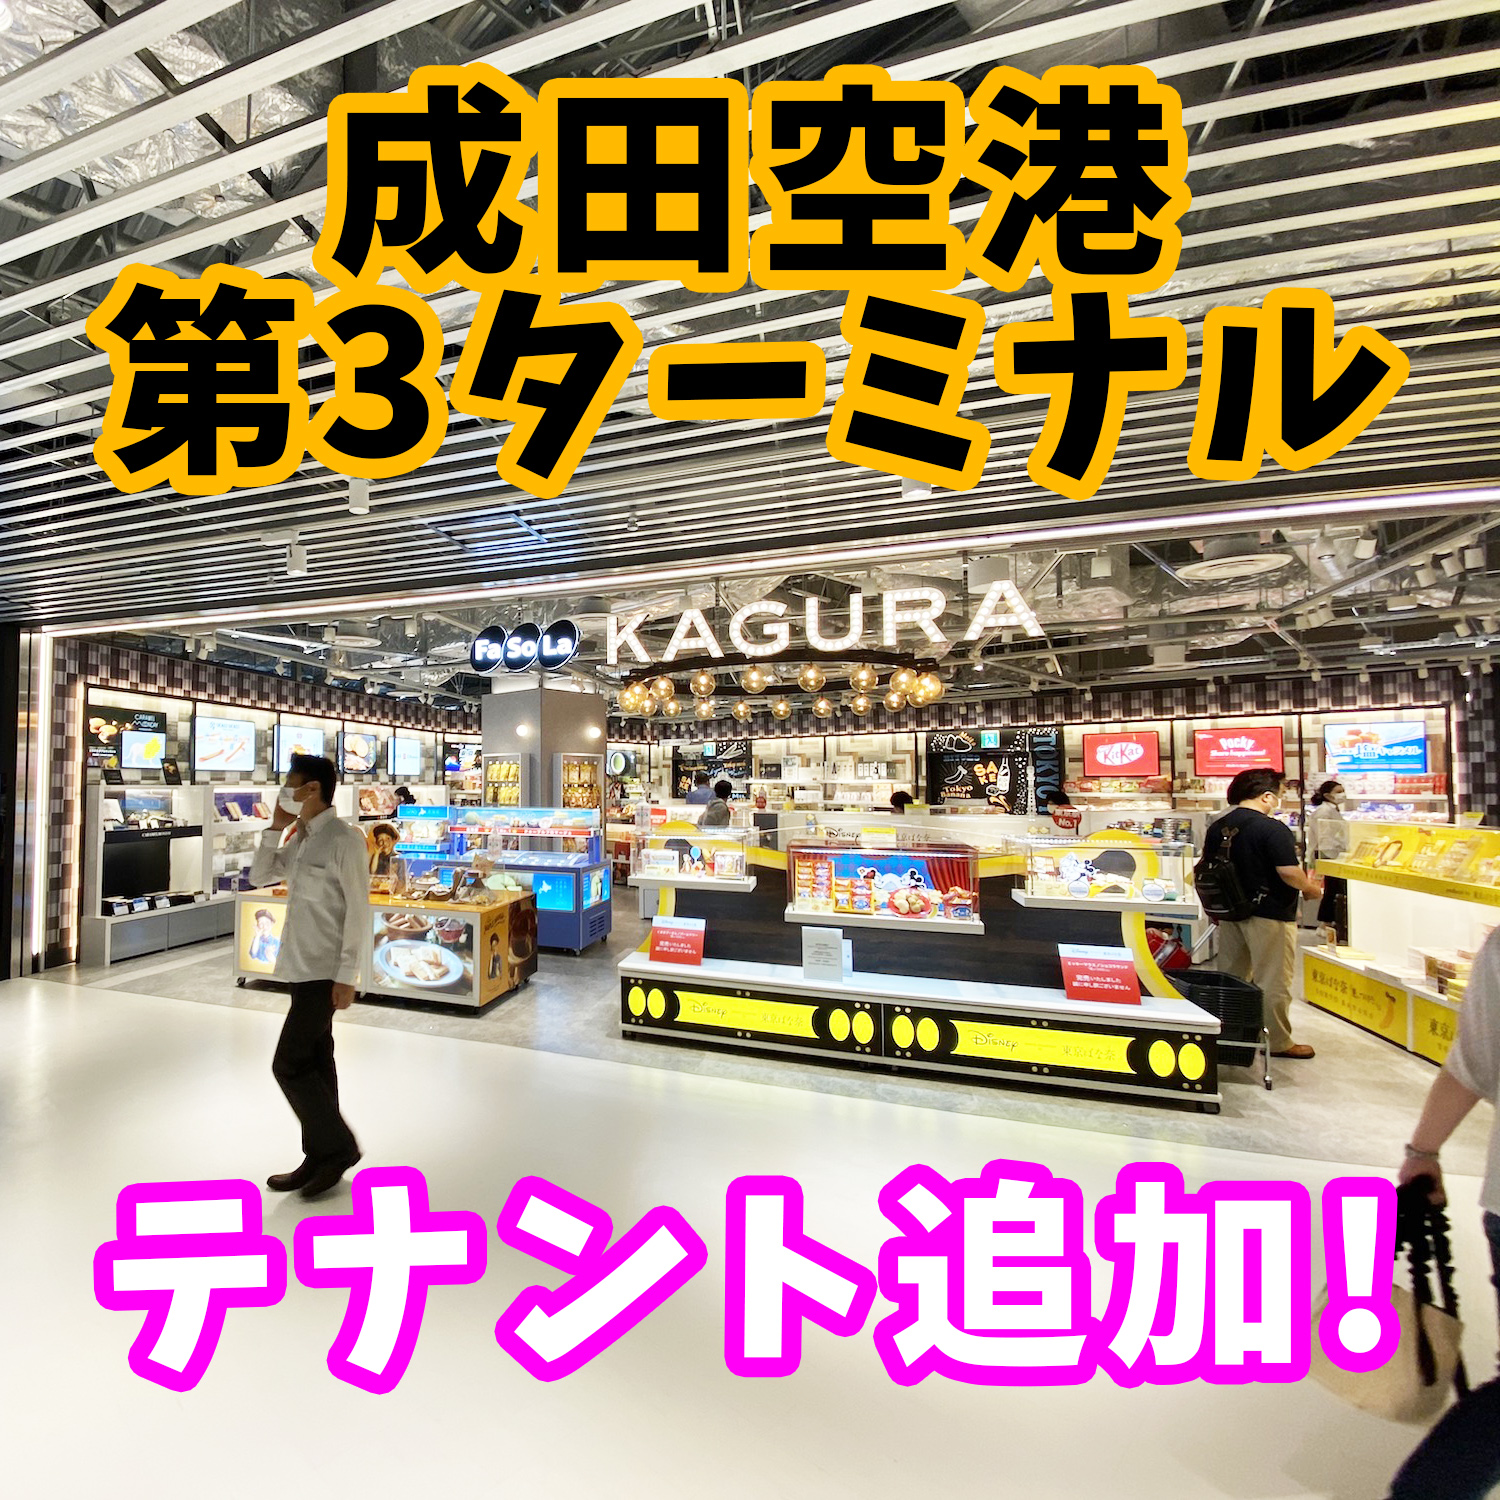 成田空港第3ターミナルが進化!! ローソン、本屋などバージョンアップされてました。